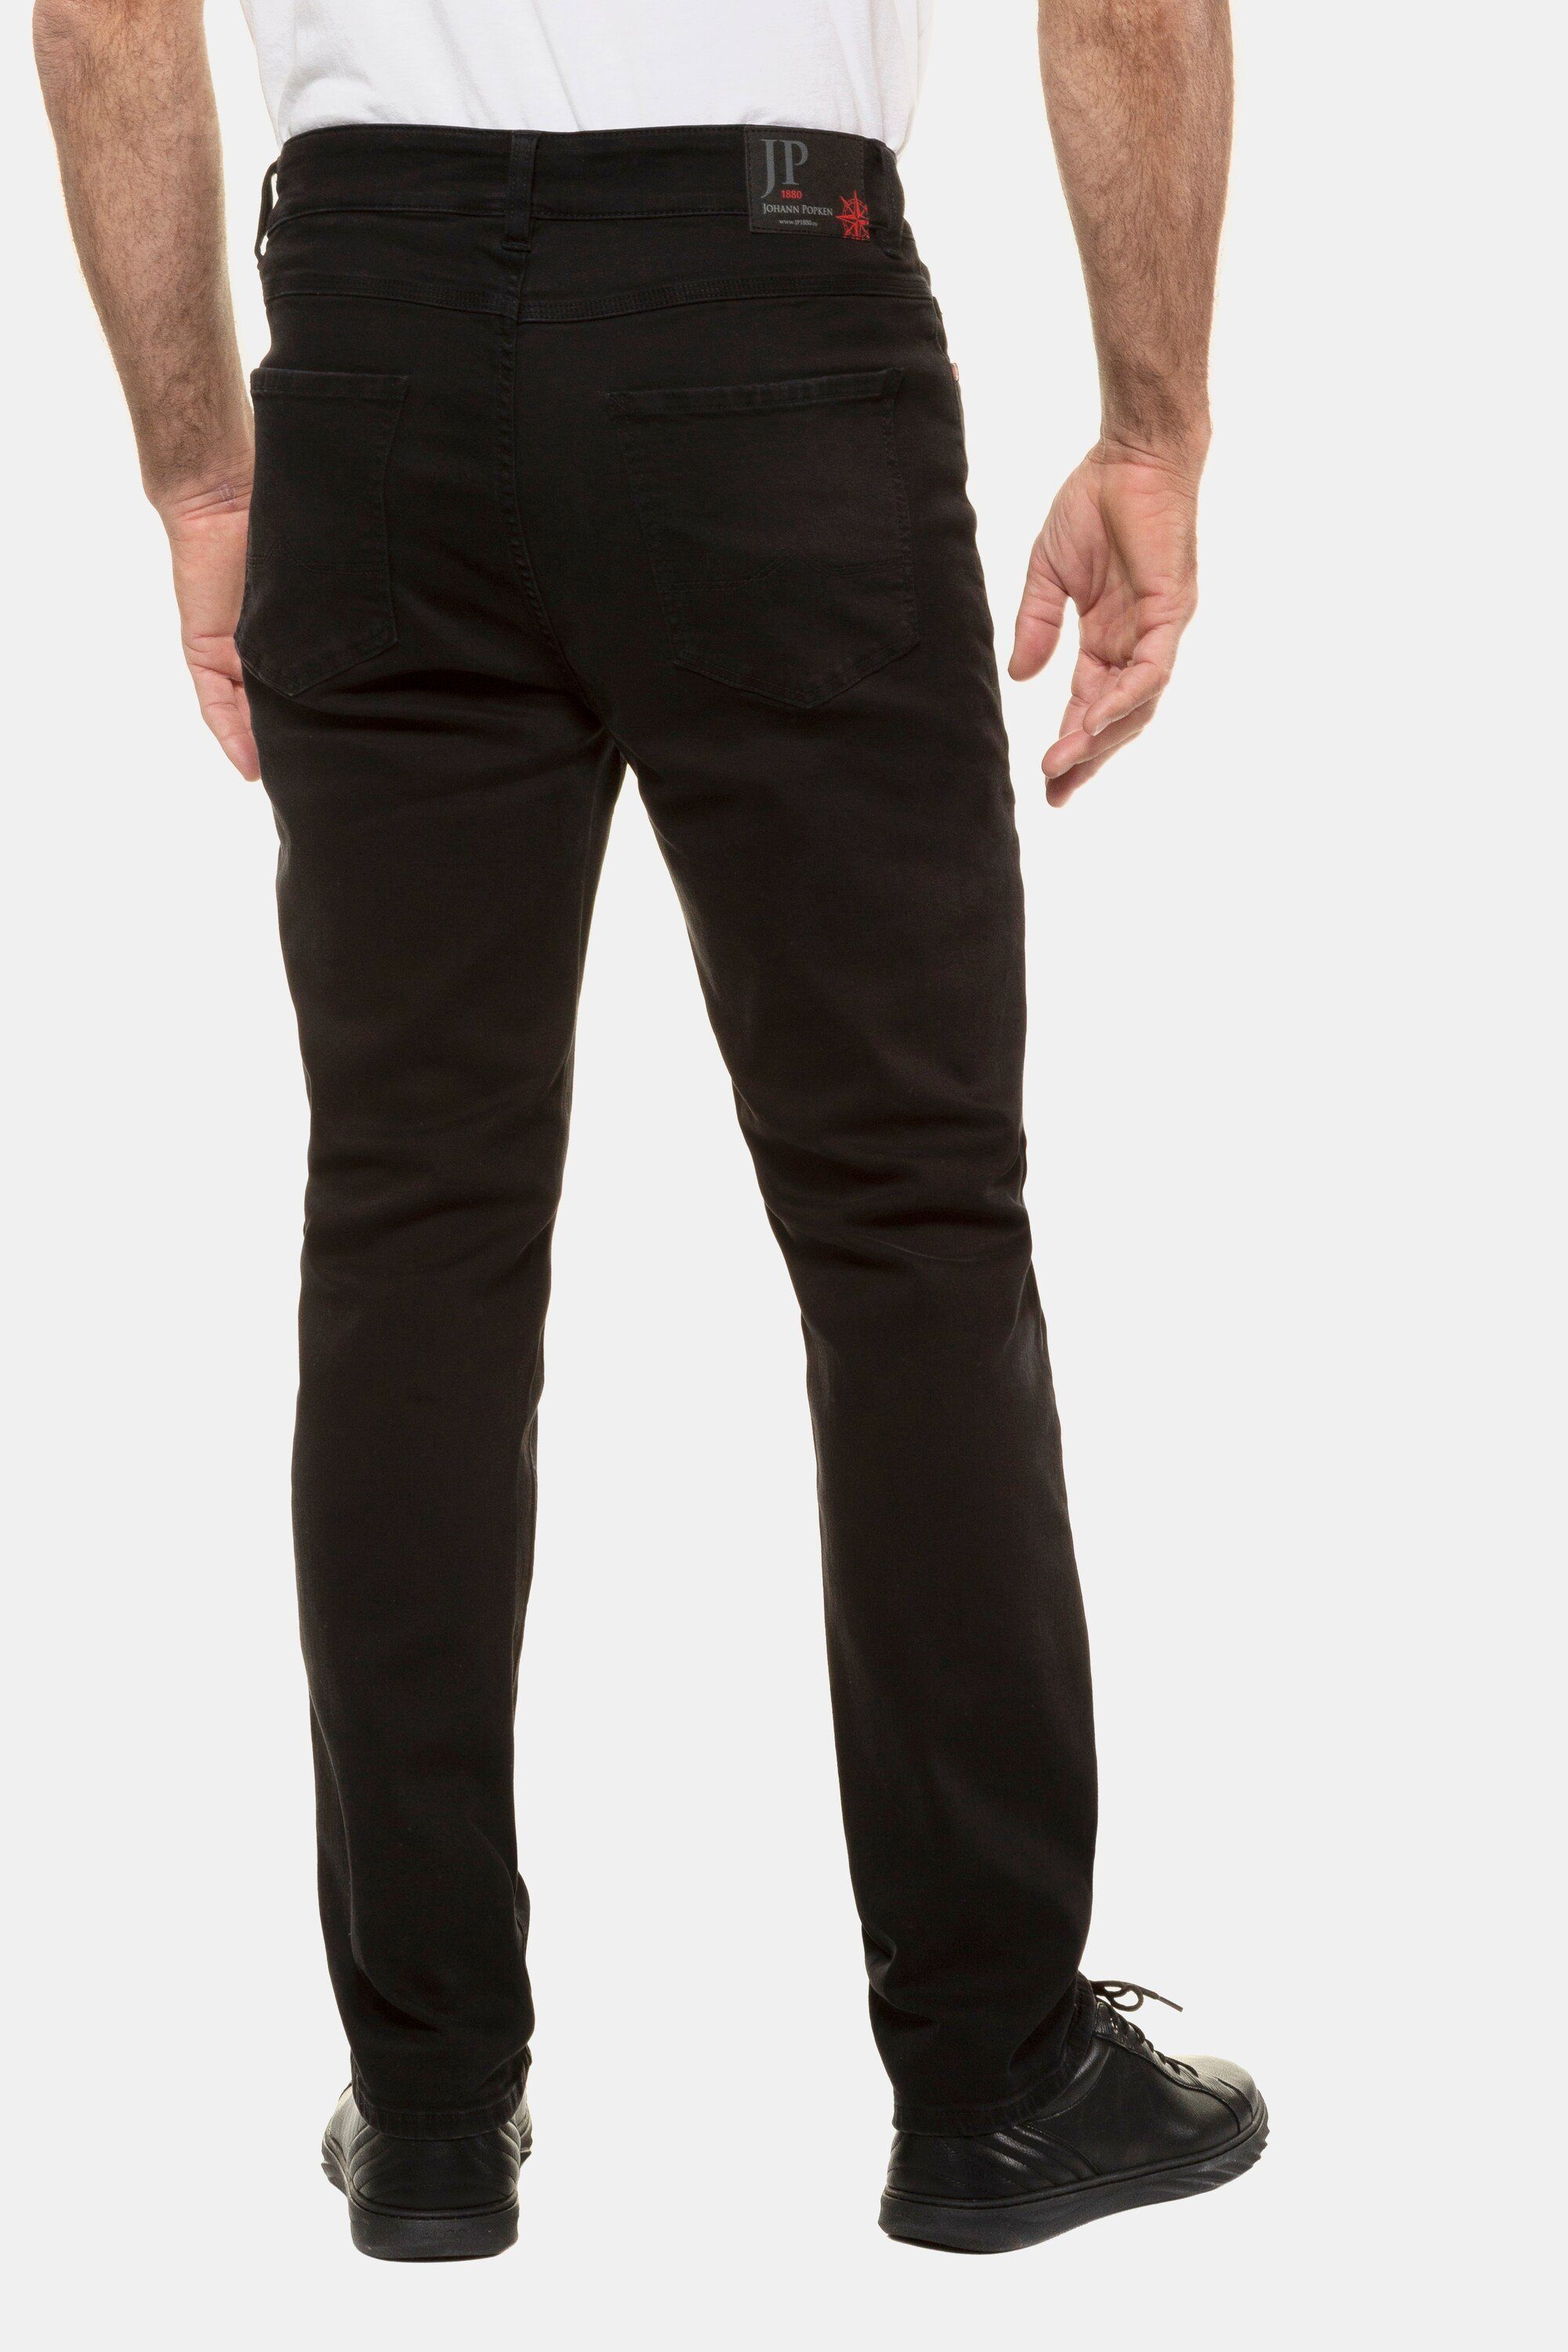 JP1880 5-Pocket-Jeans Fit Denim Jeans black FLEXNAMIC® Straight Gr. bis 70/35